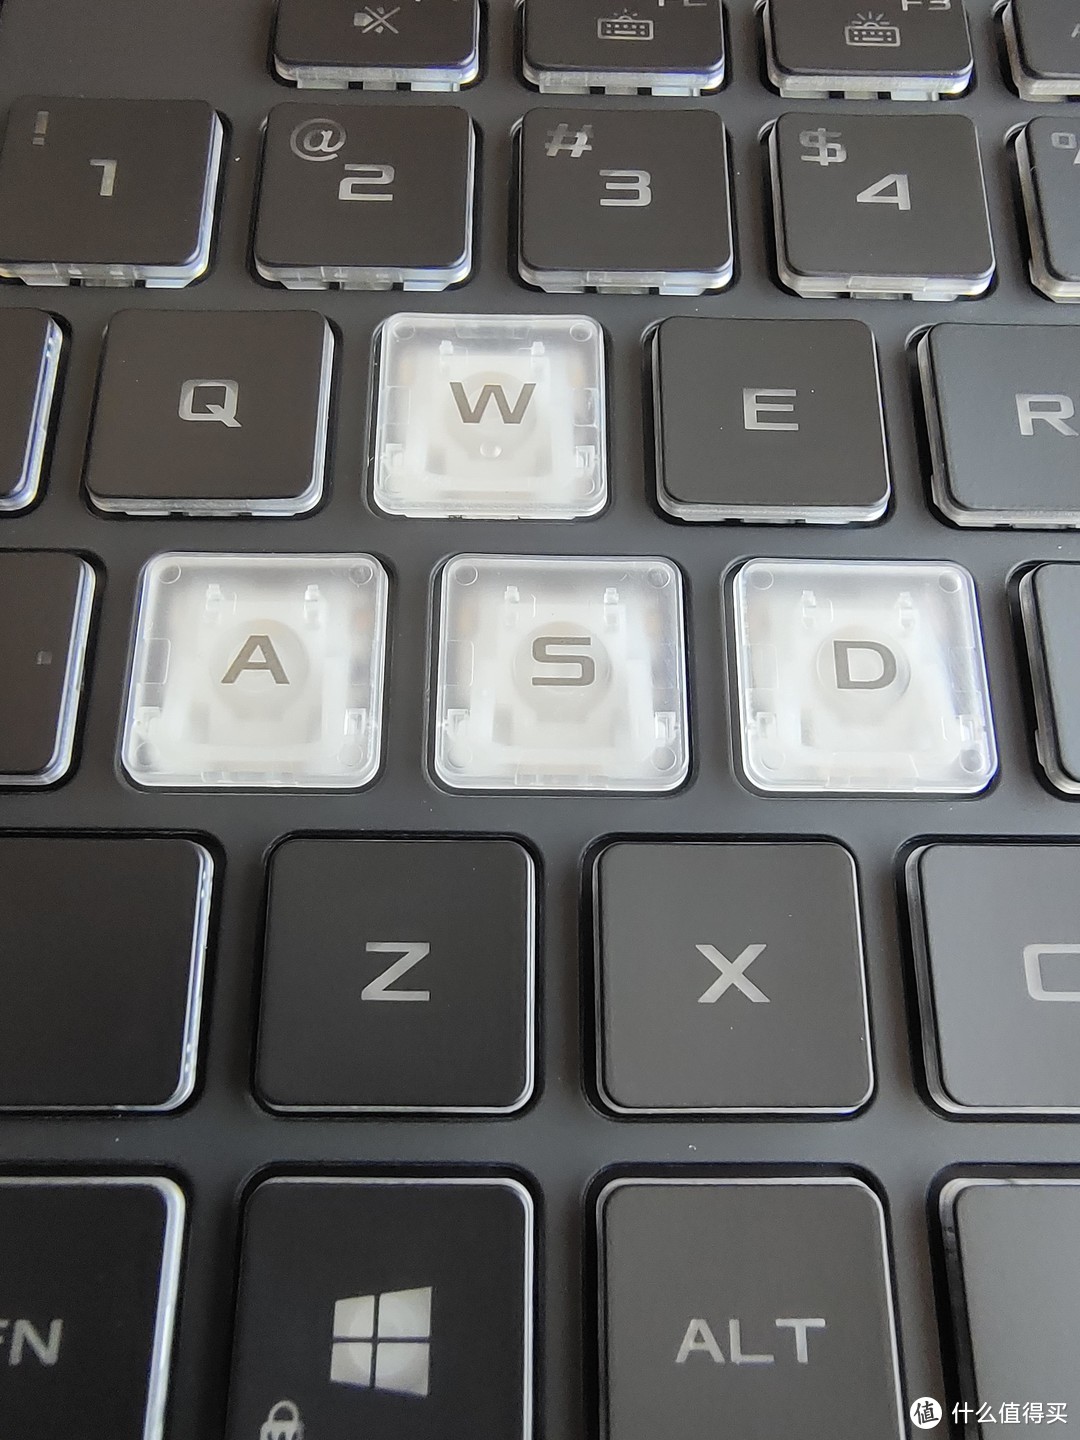 键盘质感不错，打字也舒服，不过WASD做得是透明处理，略显廉价